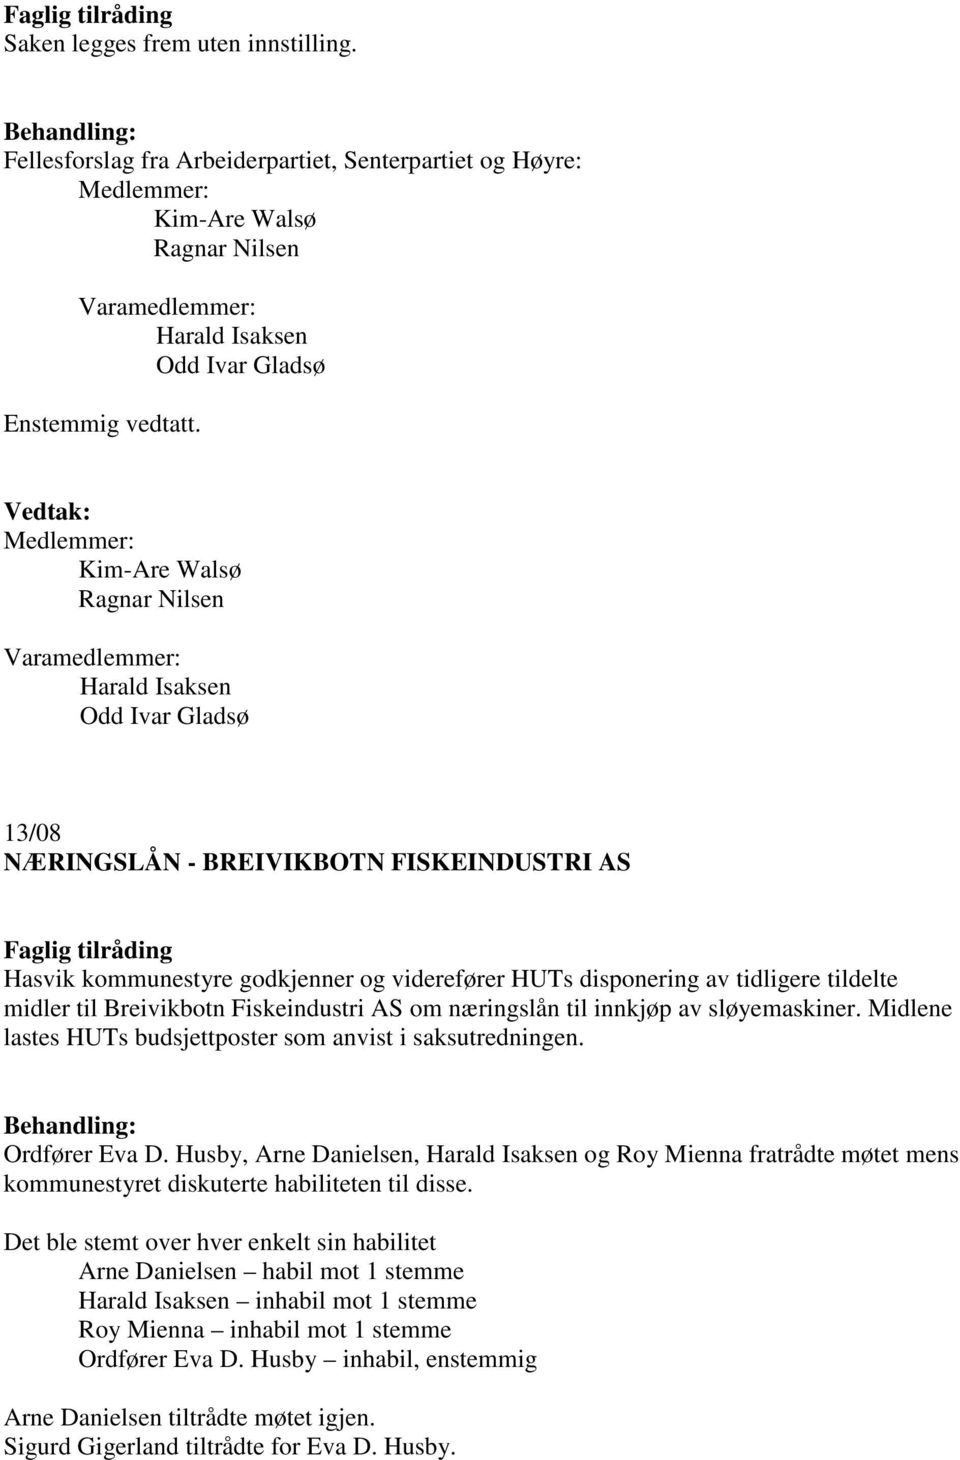 tidligere tildelte midler til Breivikbotn Fiskeindustri AS om næringslån til innkjøp av sløyemaskiner. Midlene lastes HUTs budsjettposter som anvist i saksutredningen. Ordfører Eva D.